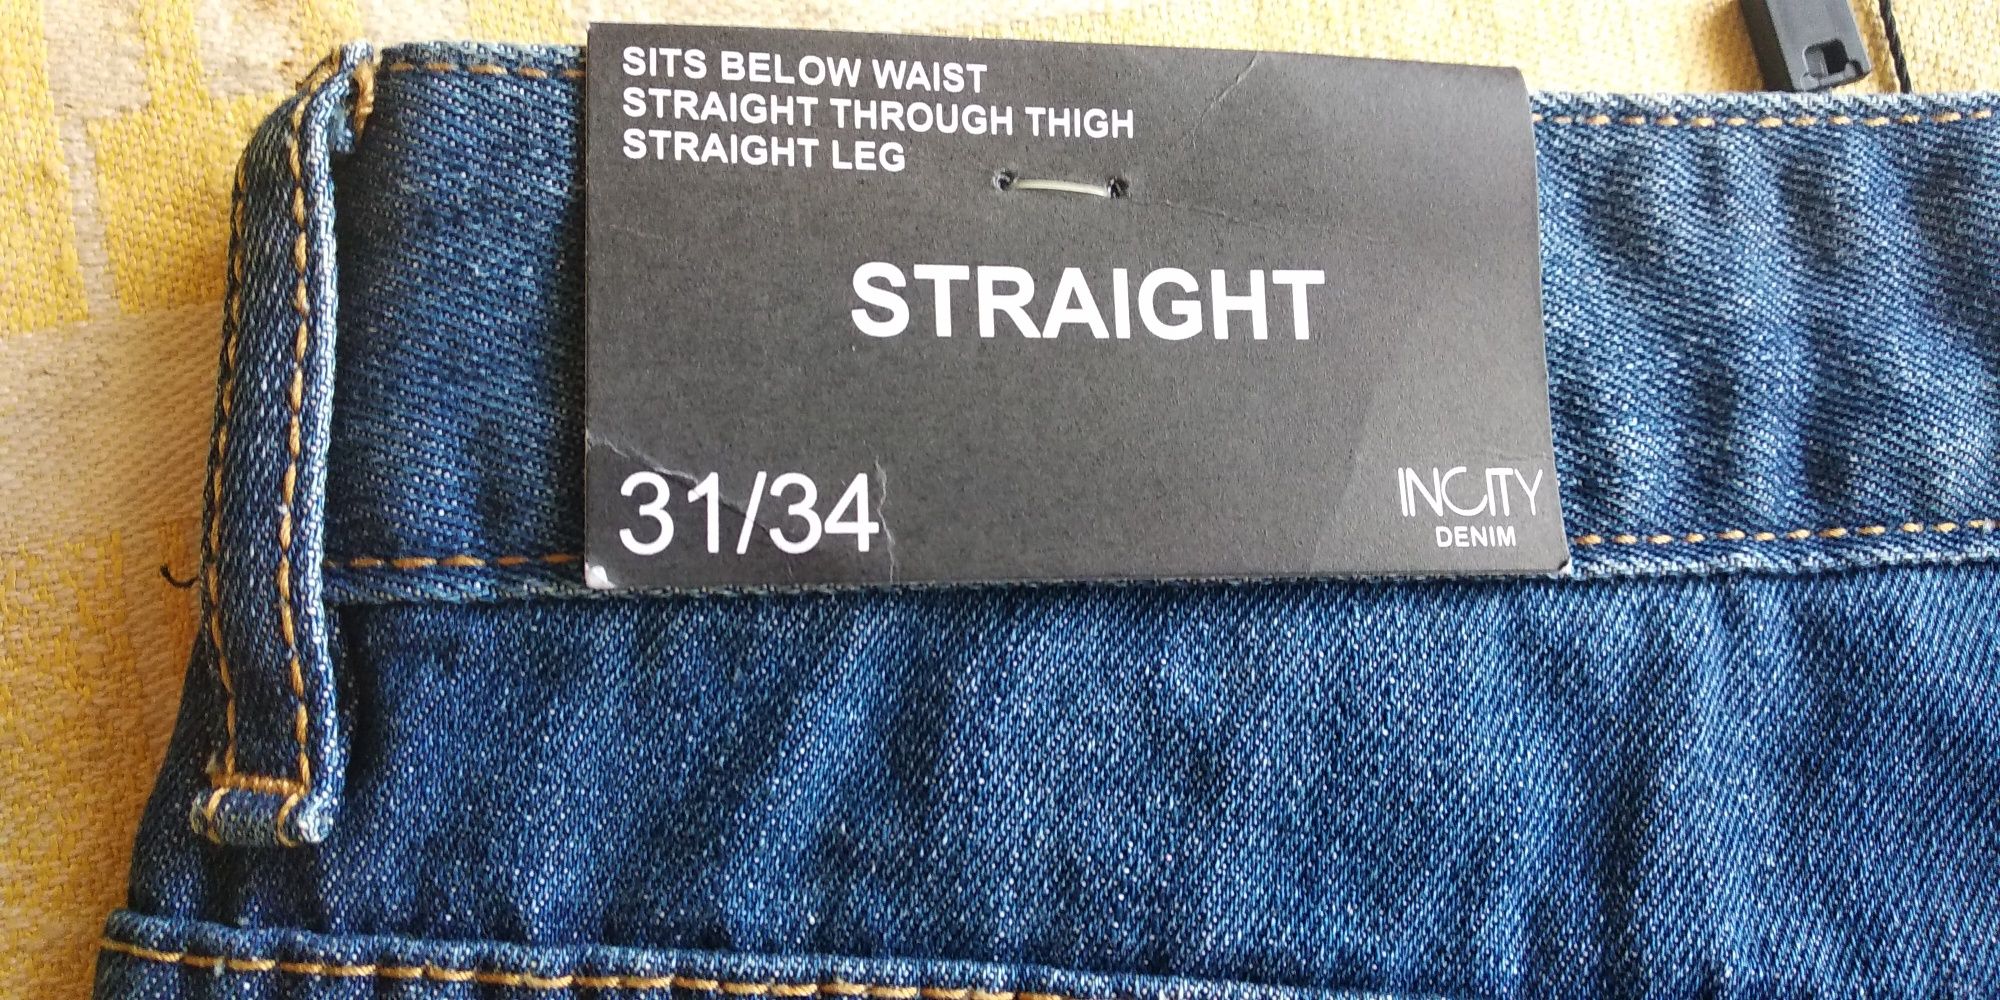 Продам джинсы новые